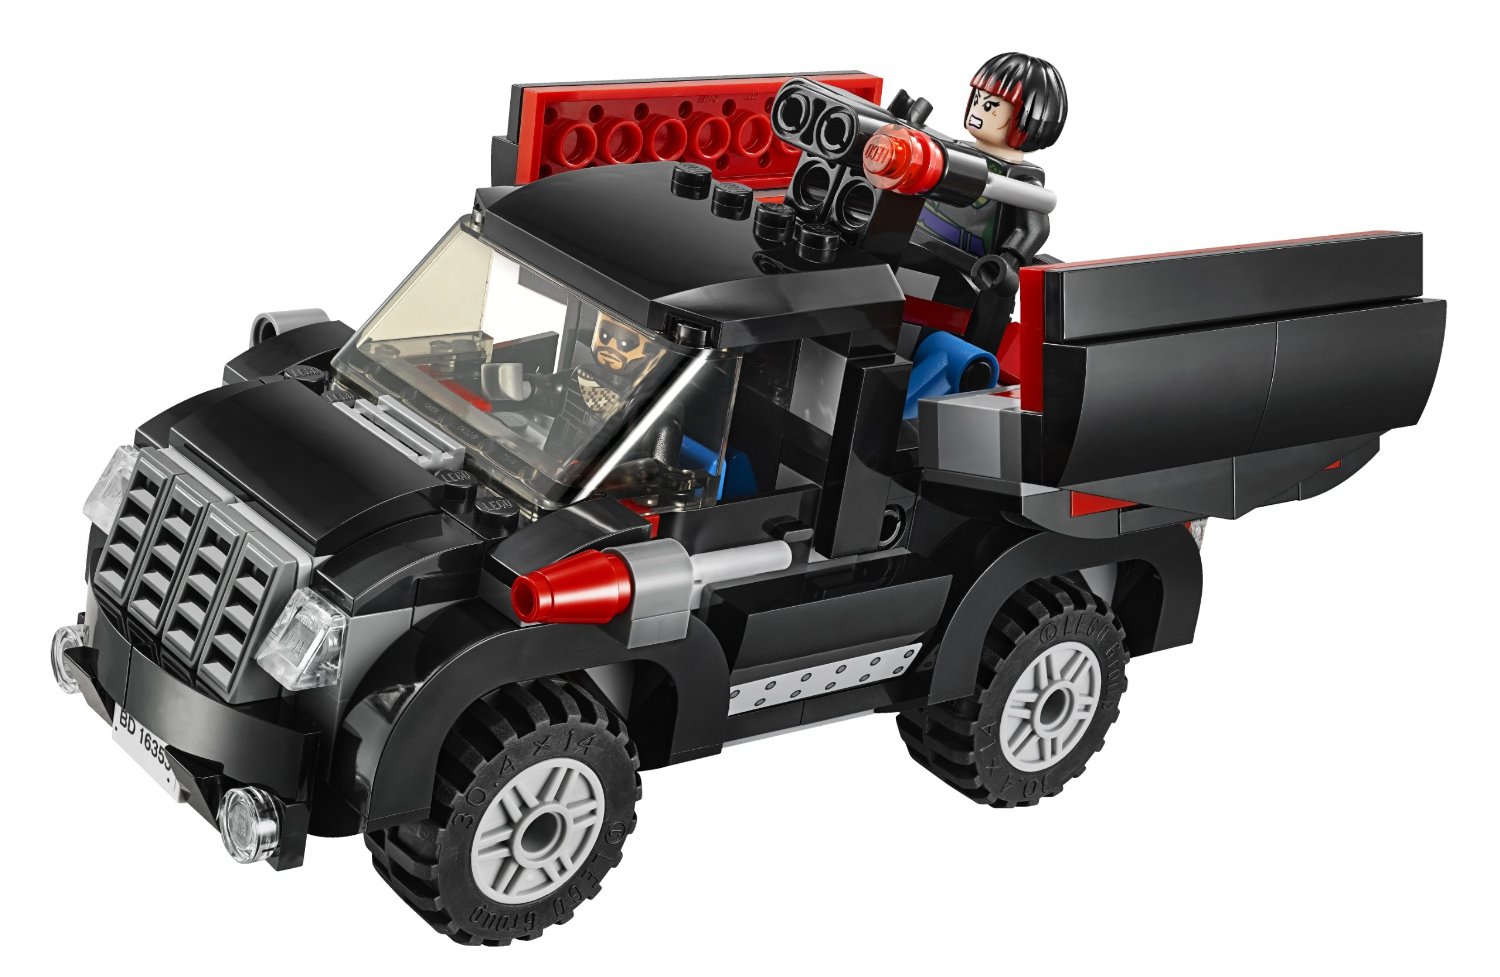 Śnieżna Ucieczka Wielką Ciężarówką Lego 79116